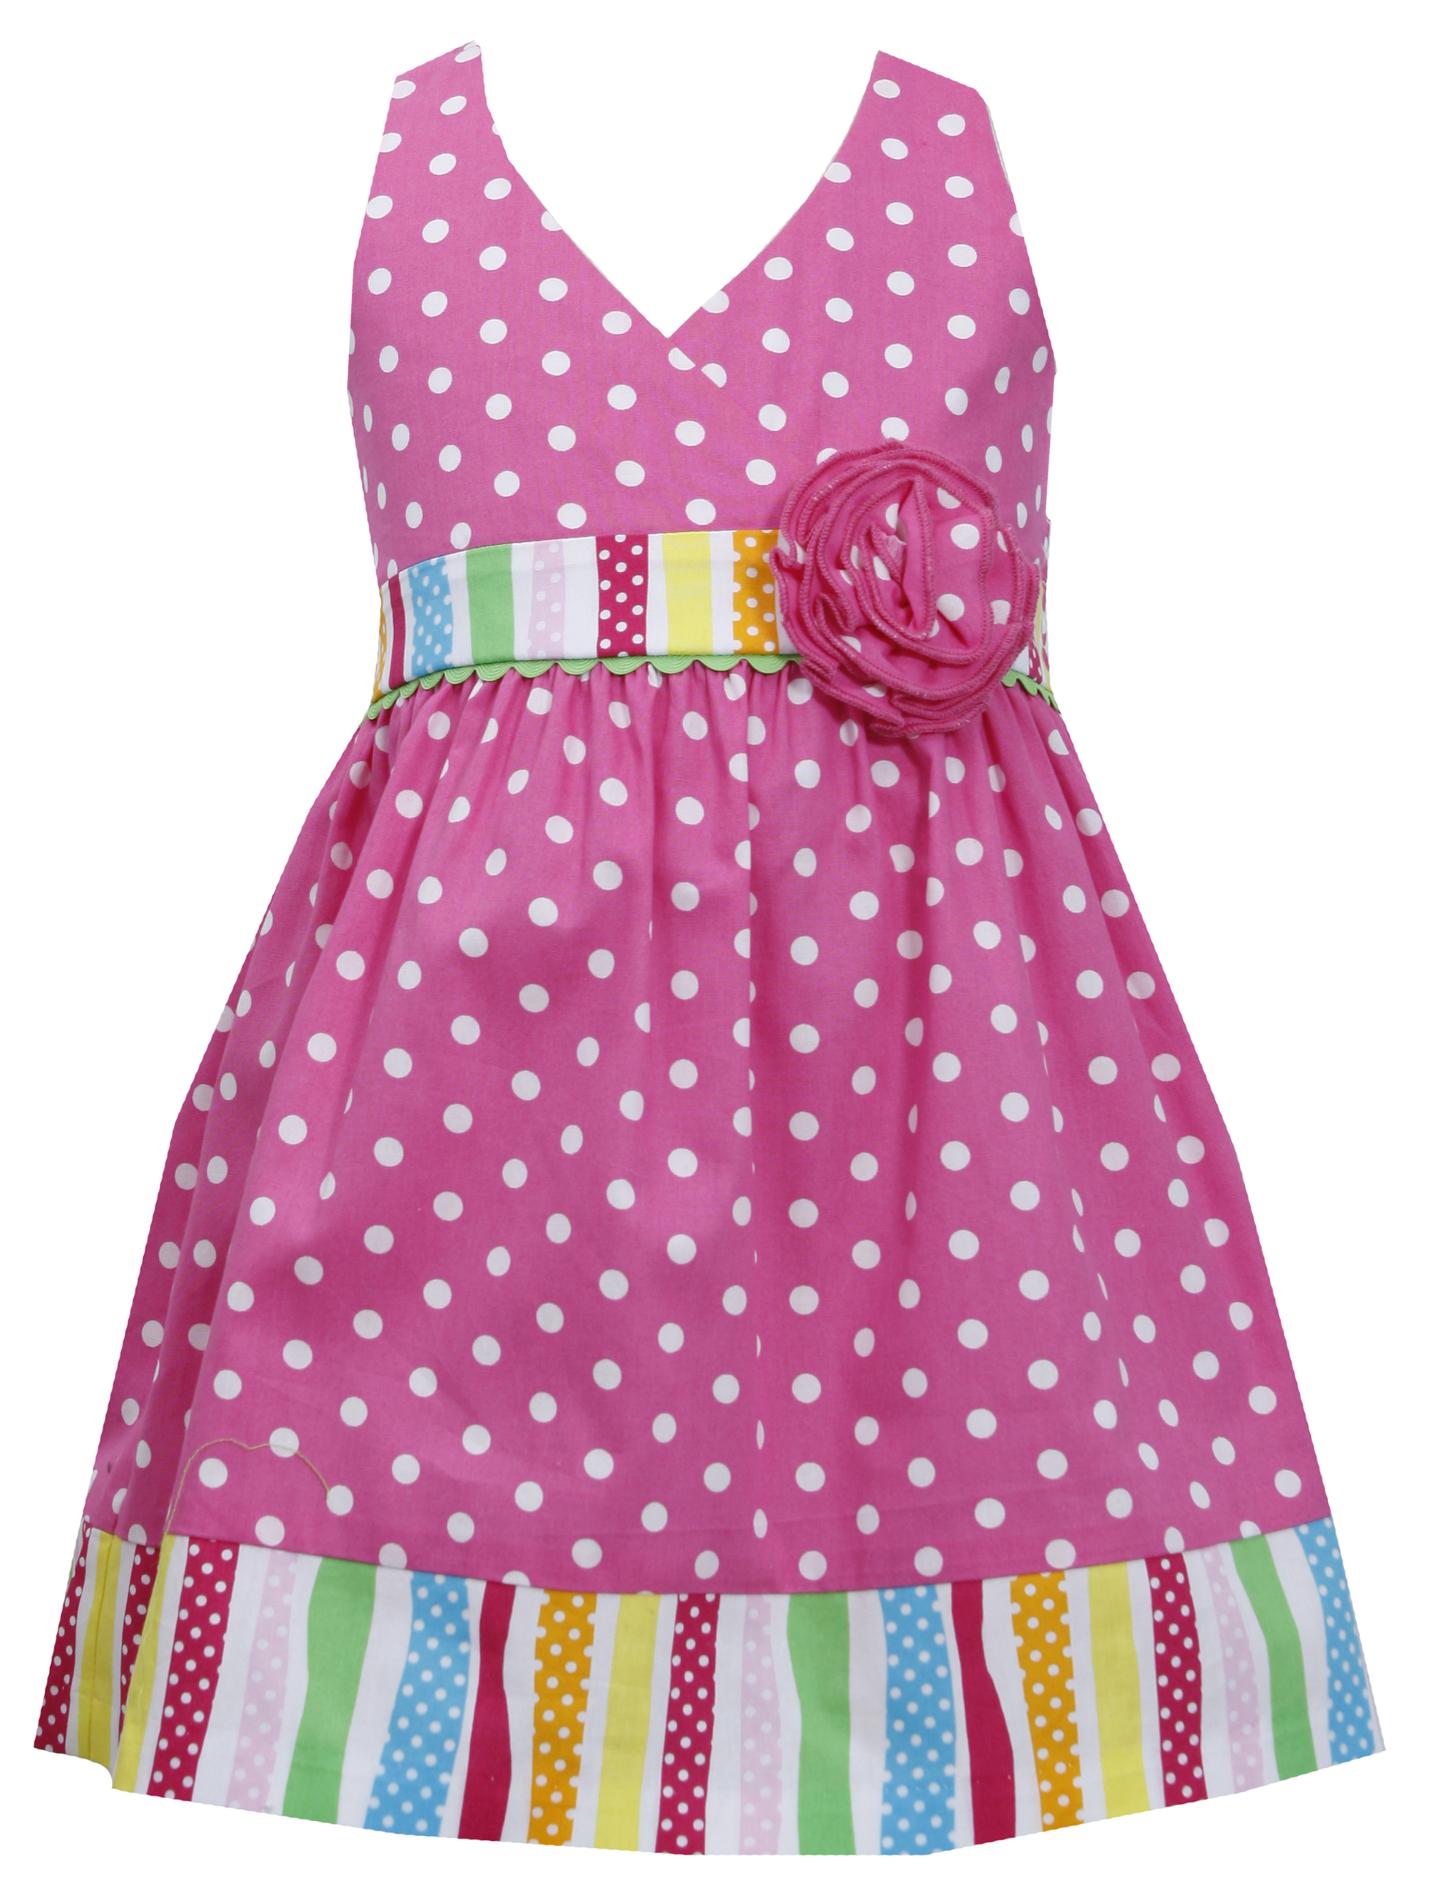 Ashley Ann Infant & Toddler Girl's Halter Top Sundress - Polka Dot